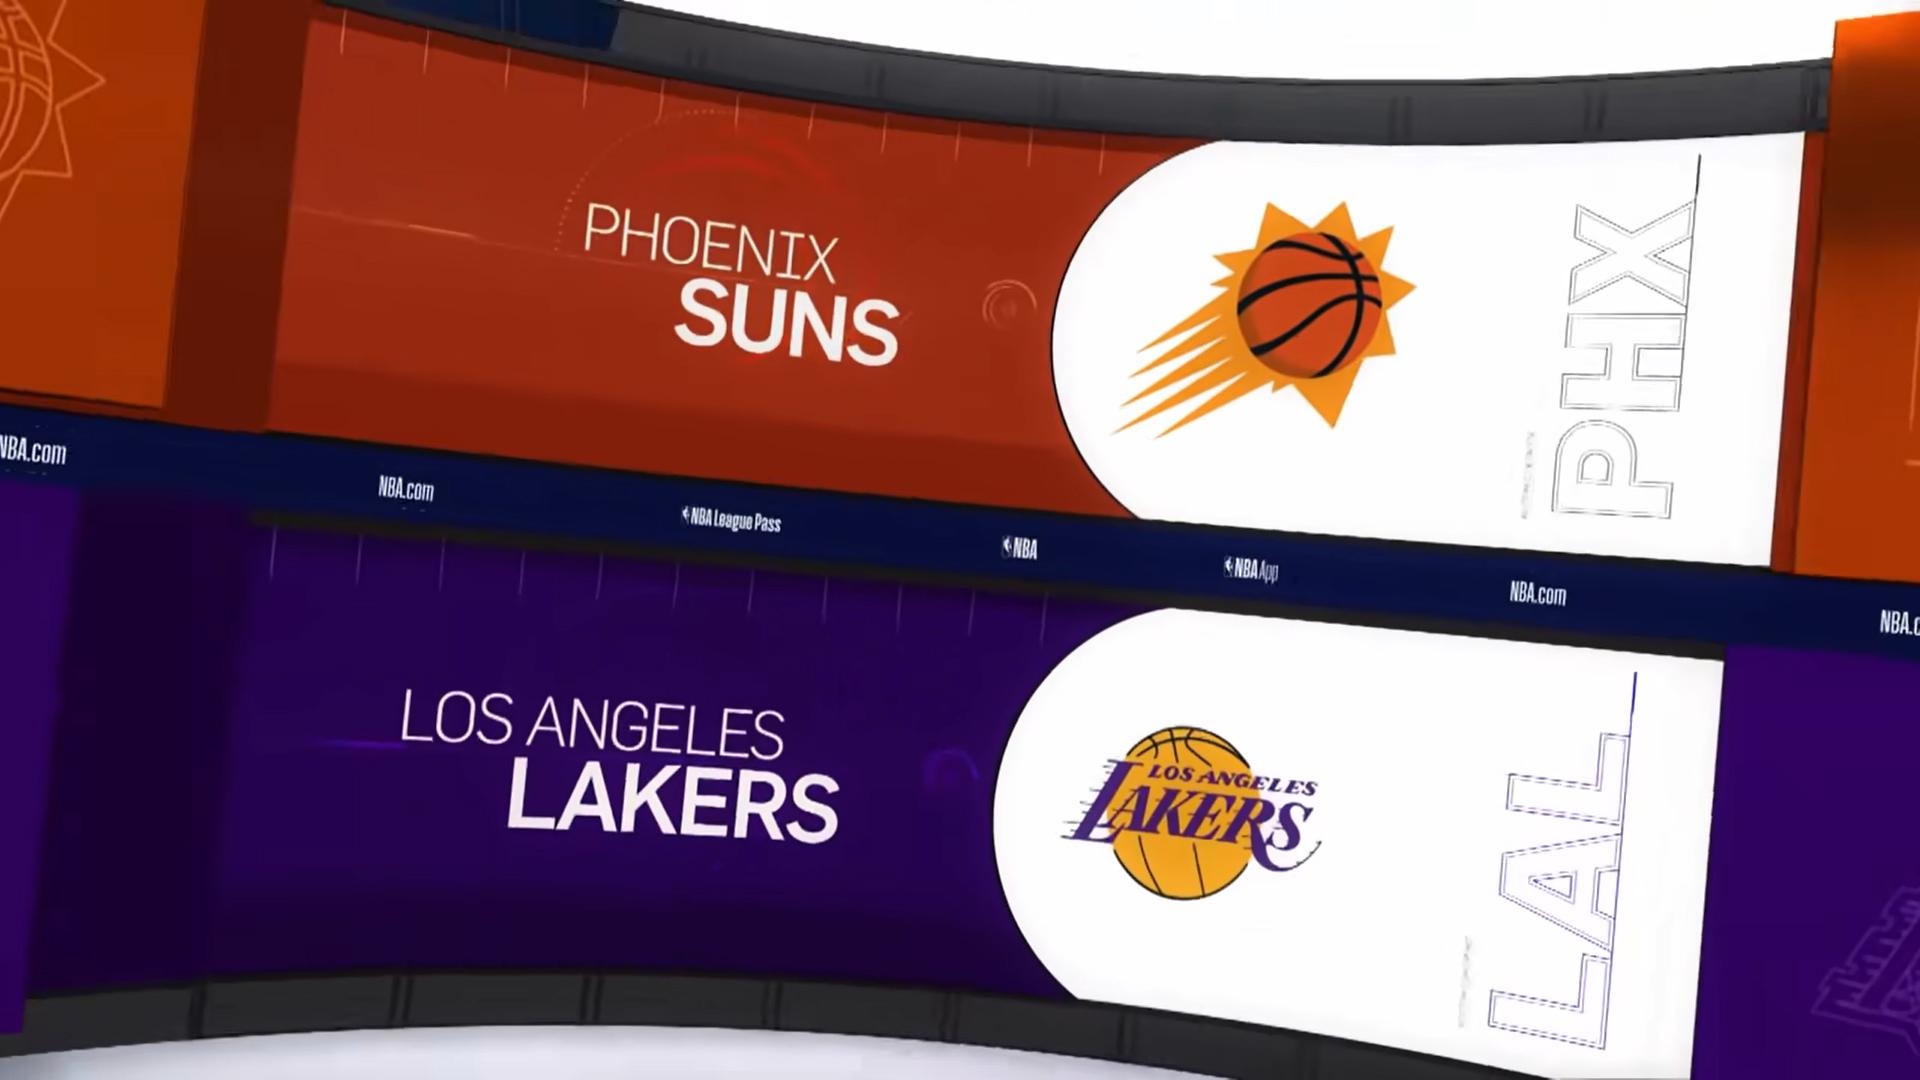 Suns Lakers 20 mai 2021